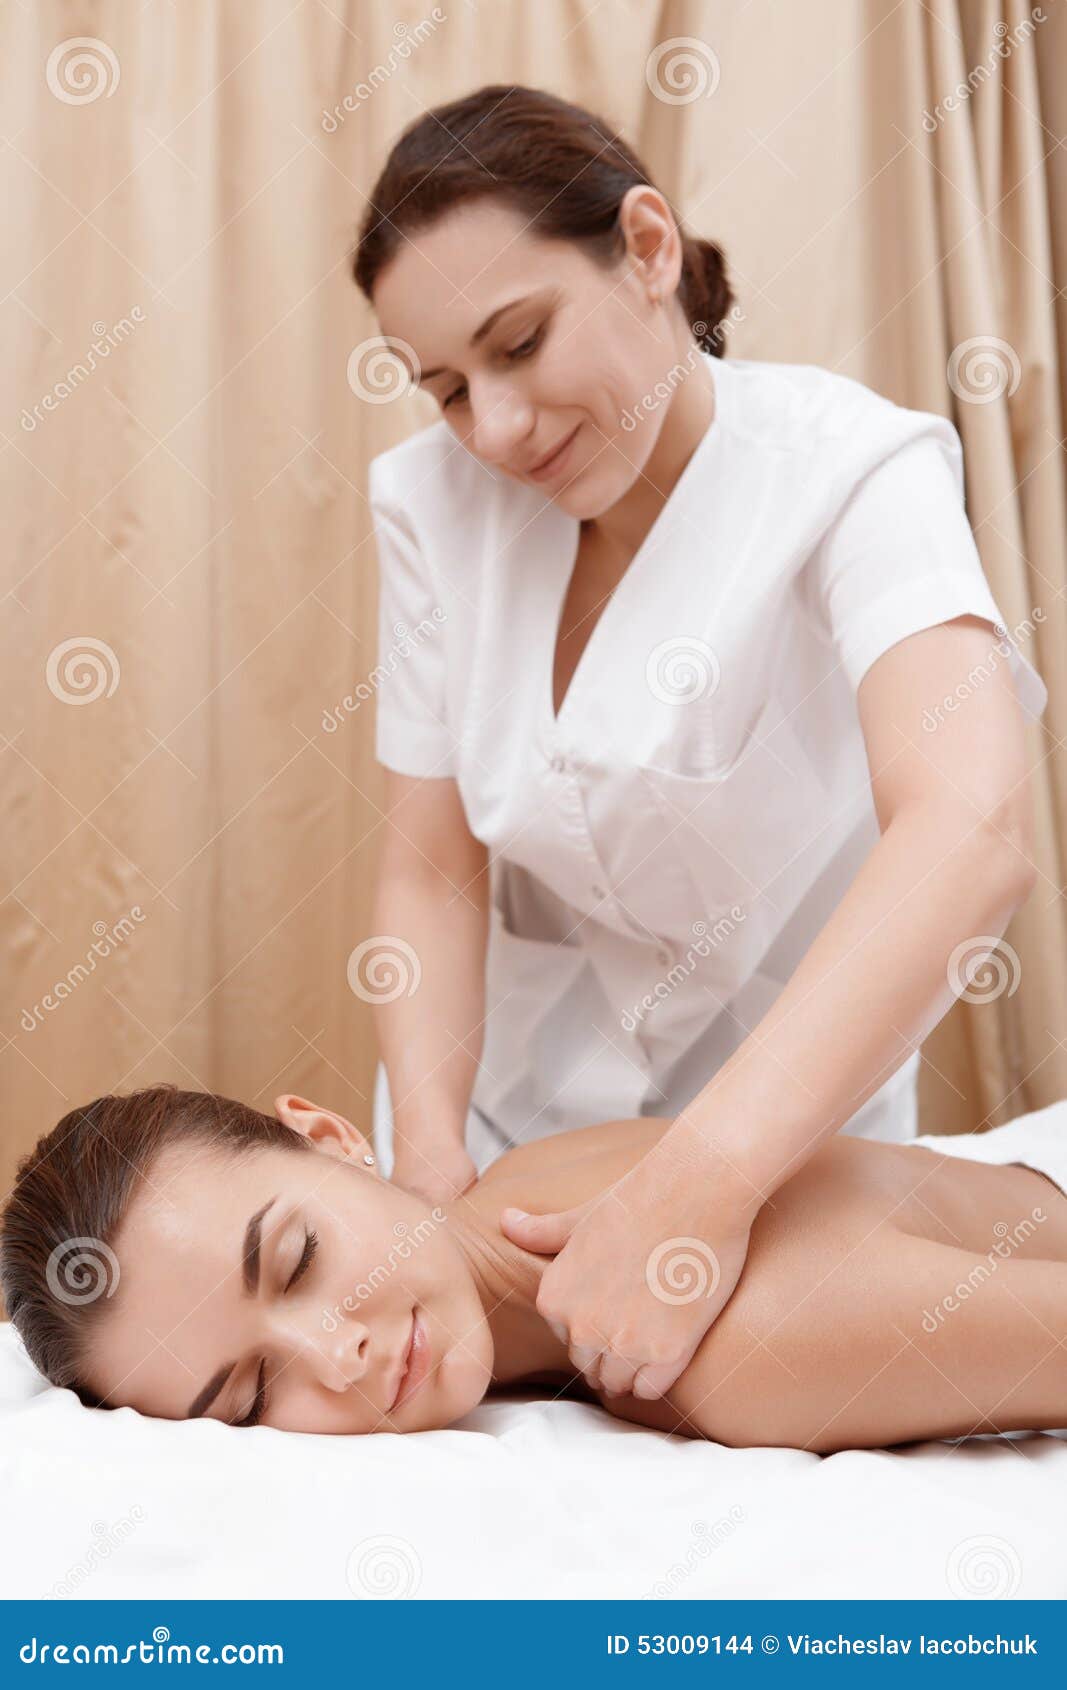 порно массаж с русской малолеткой фото 11